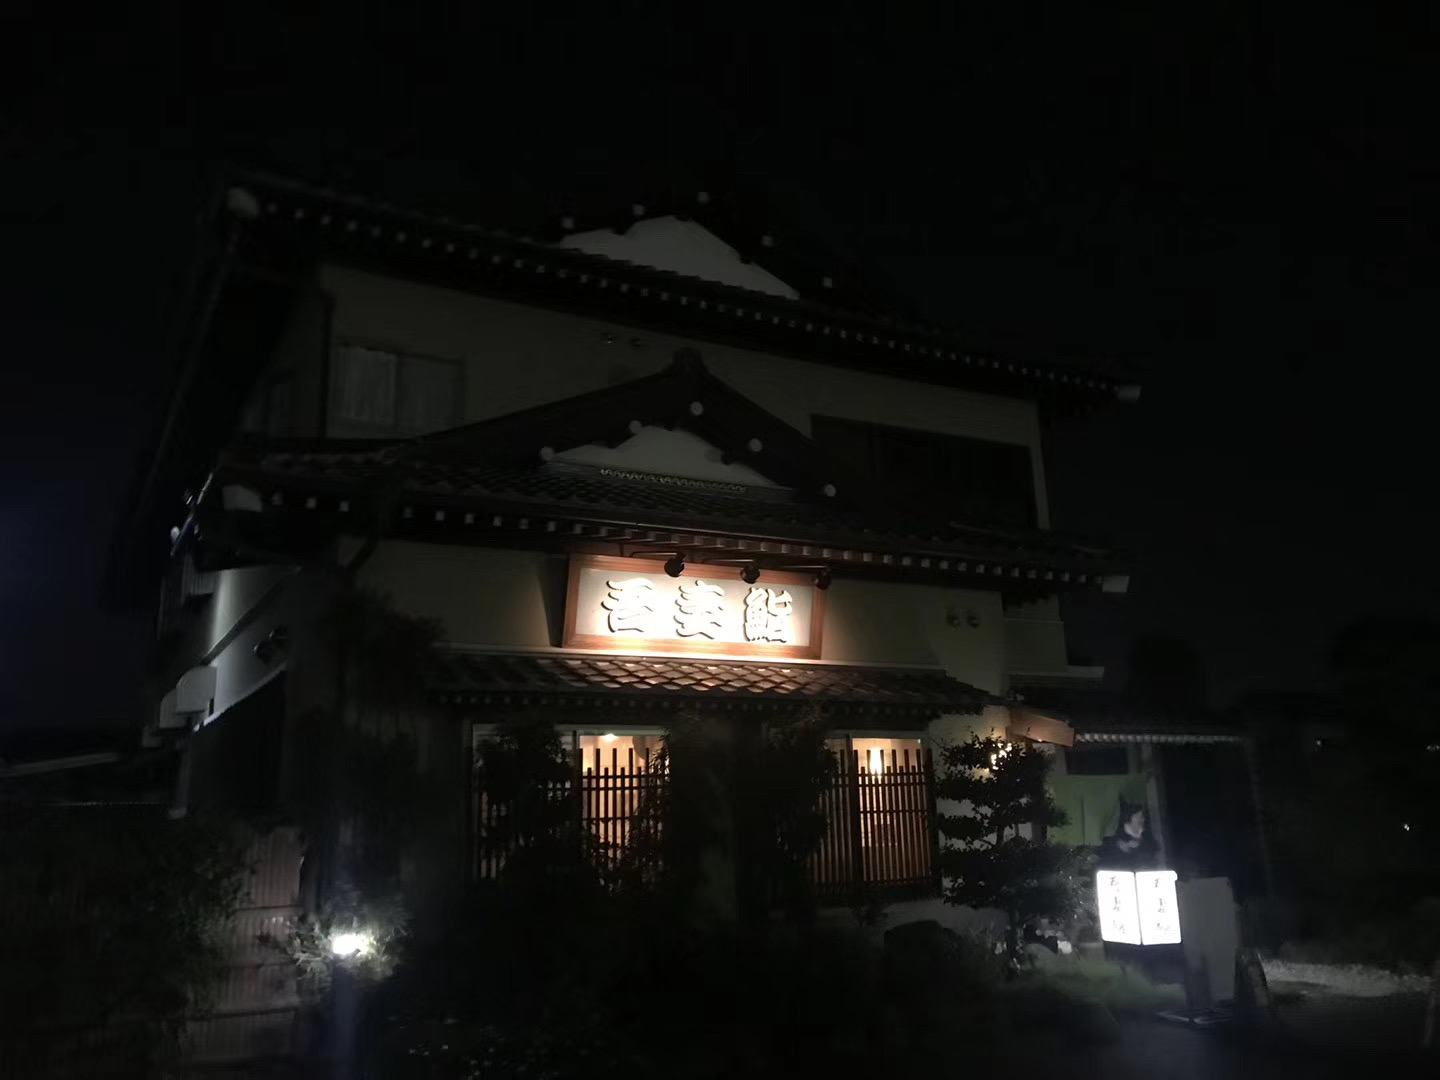 吾妻鮨应该是当地最好的寿司店，茨城的好友安排了晚宴为8人美女团饯行，感谢大家都过了9天愉快的行程！